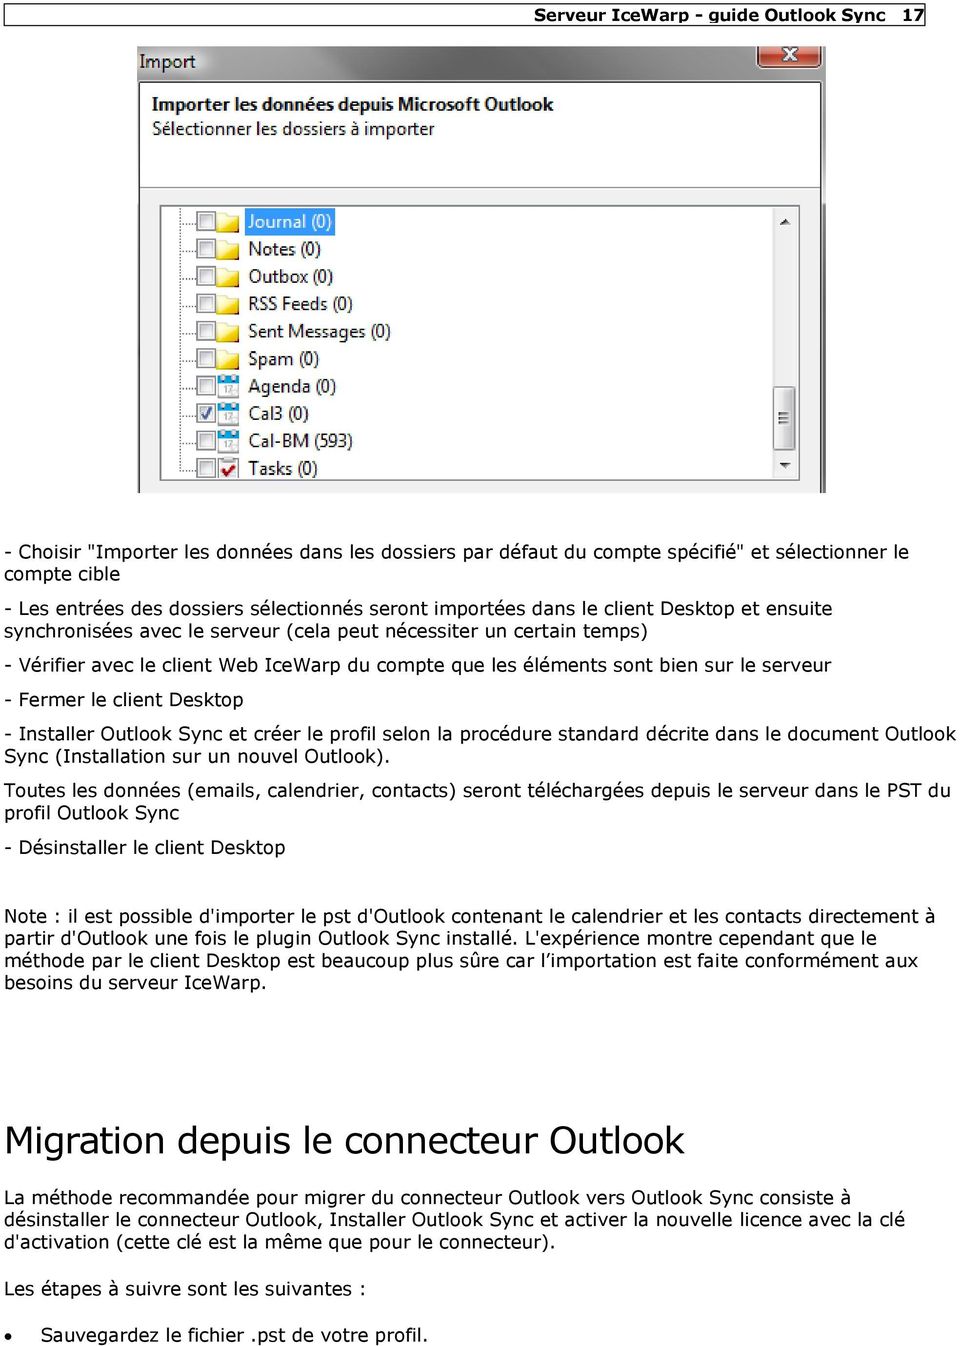 serveur - Fermer le client Desktop - Installer Outlook Sync et créer le profil selon la procédure standard décrite dans le document Outlook Sync (Installation sur un nouvel Outlook).